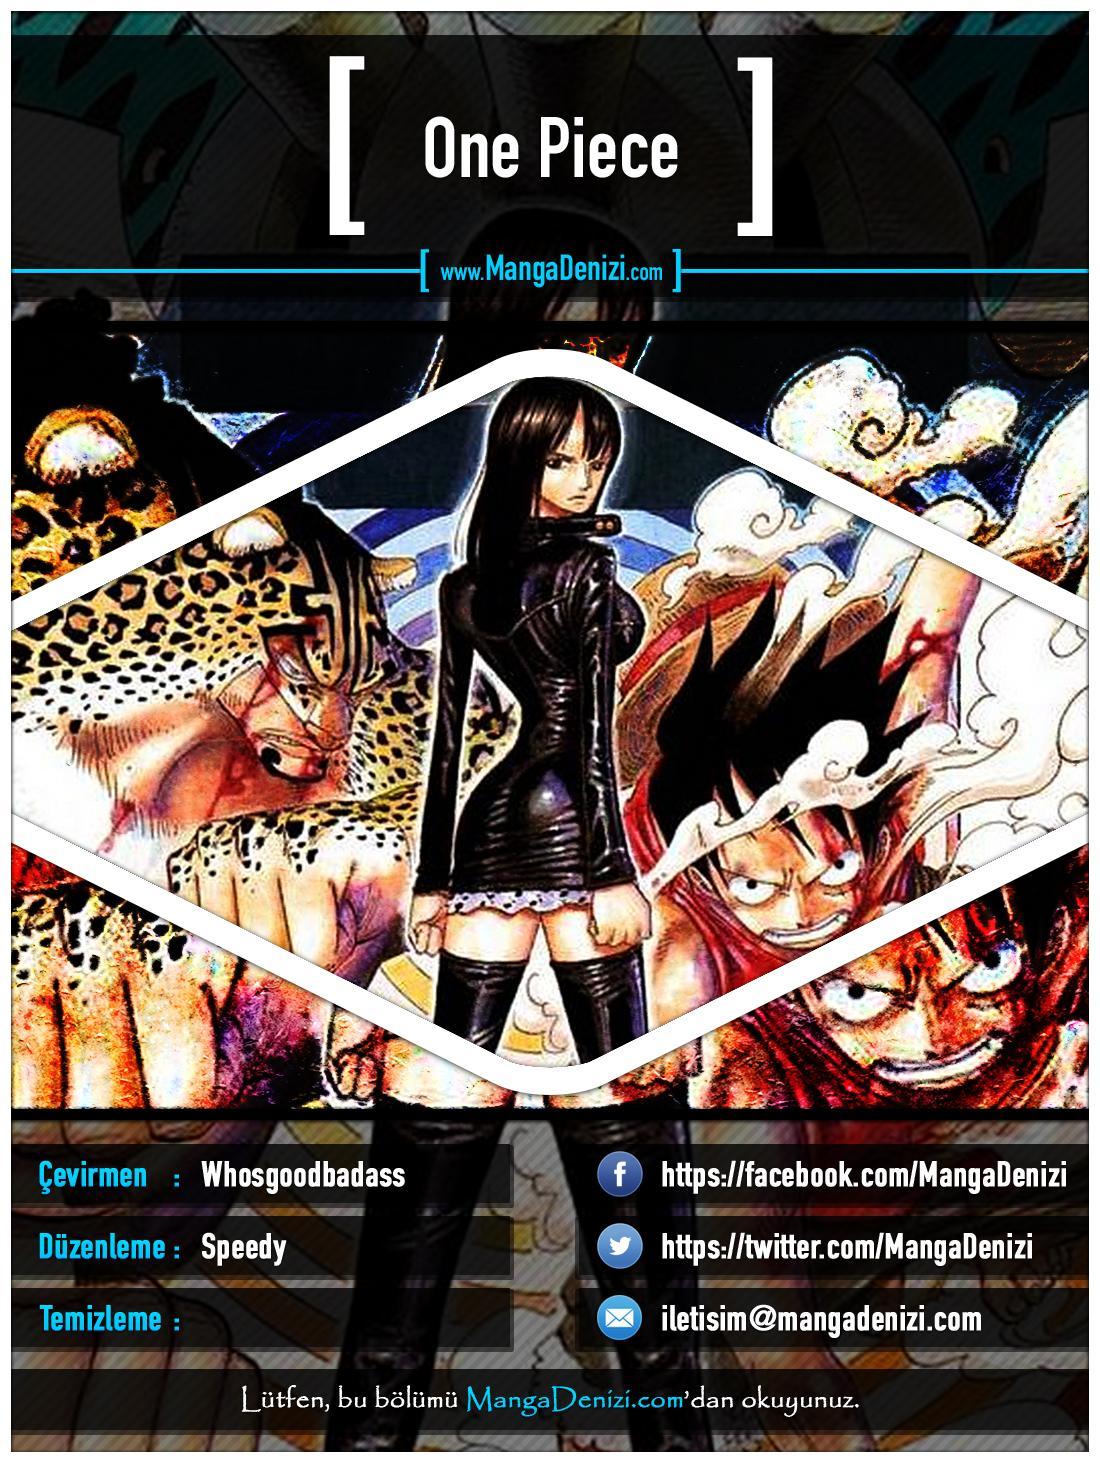 One Piece [Renkli] mangasının 0330 bölümünün 1. sayfasını okuyorsunuz.